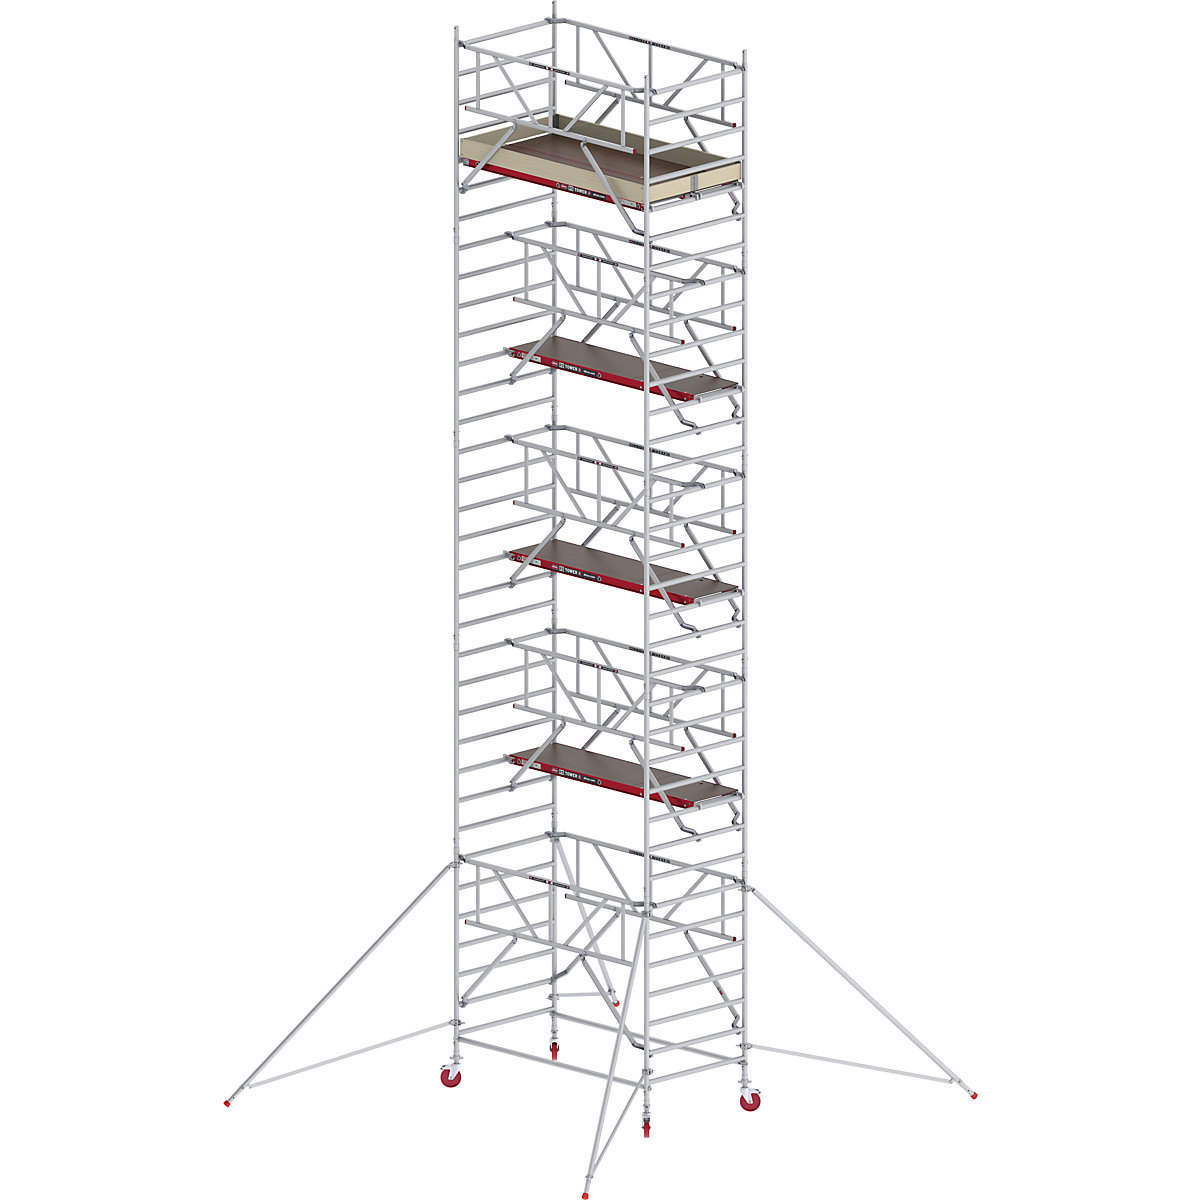 Trabattello mobile RS TOWER 42 largo con Safe-Quick® – Altrex, piattaforma in legno, lunghezza 2,45 m, altezza di lavoro 11,20 m-8